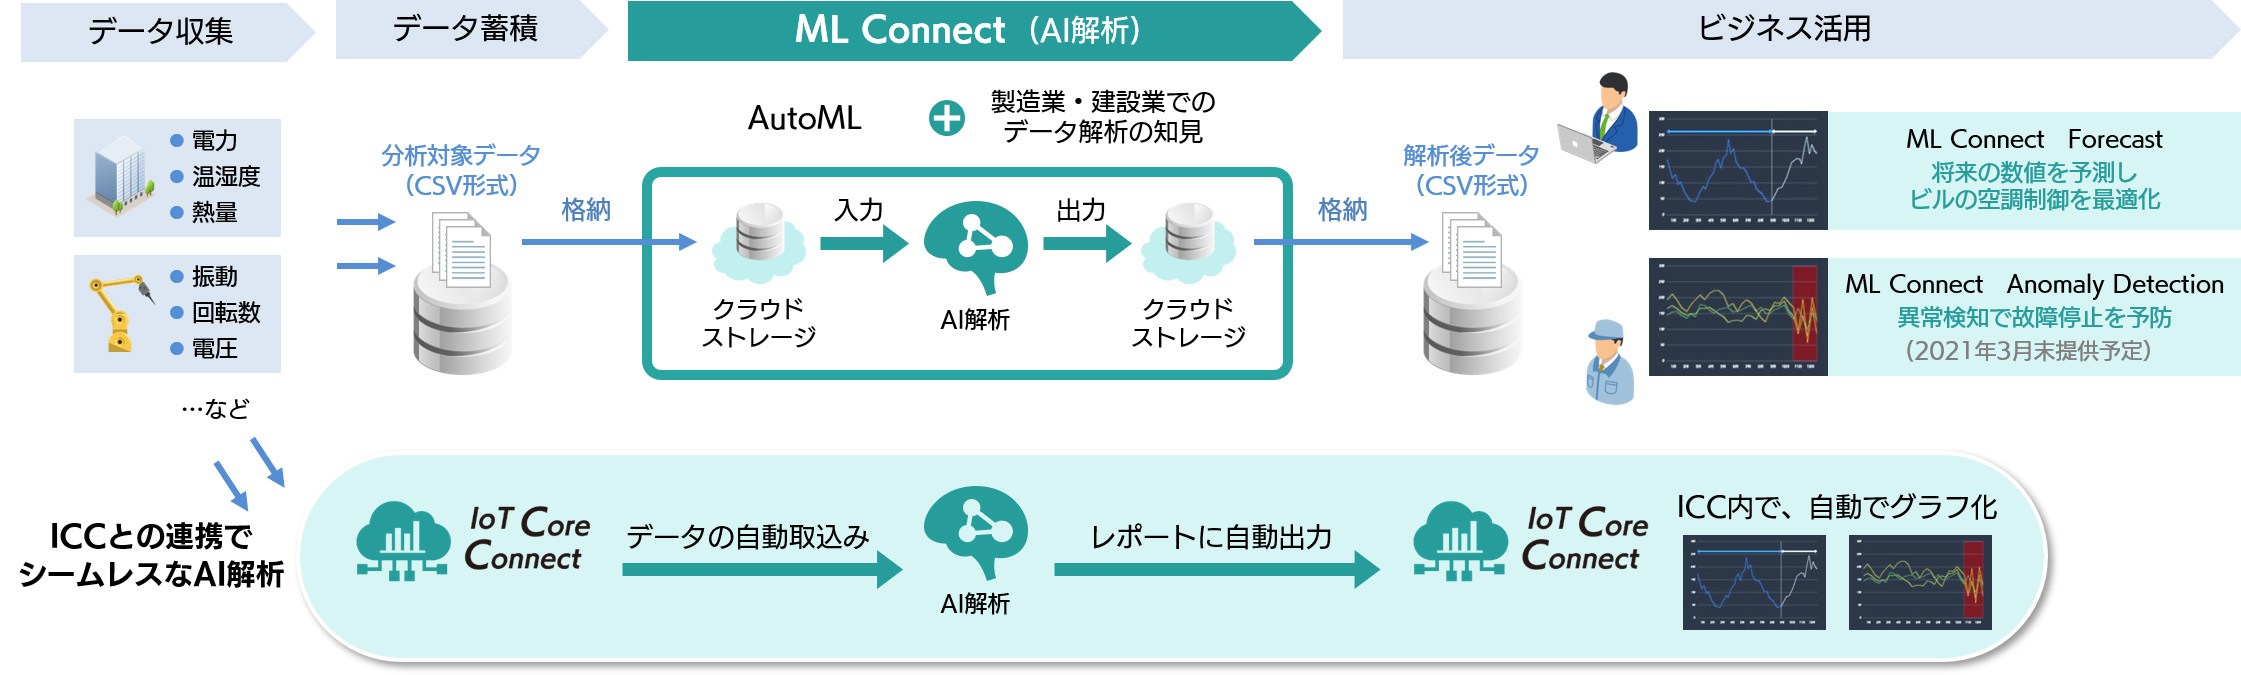 ML ConnectpC[W@oTFSBeNmW[